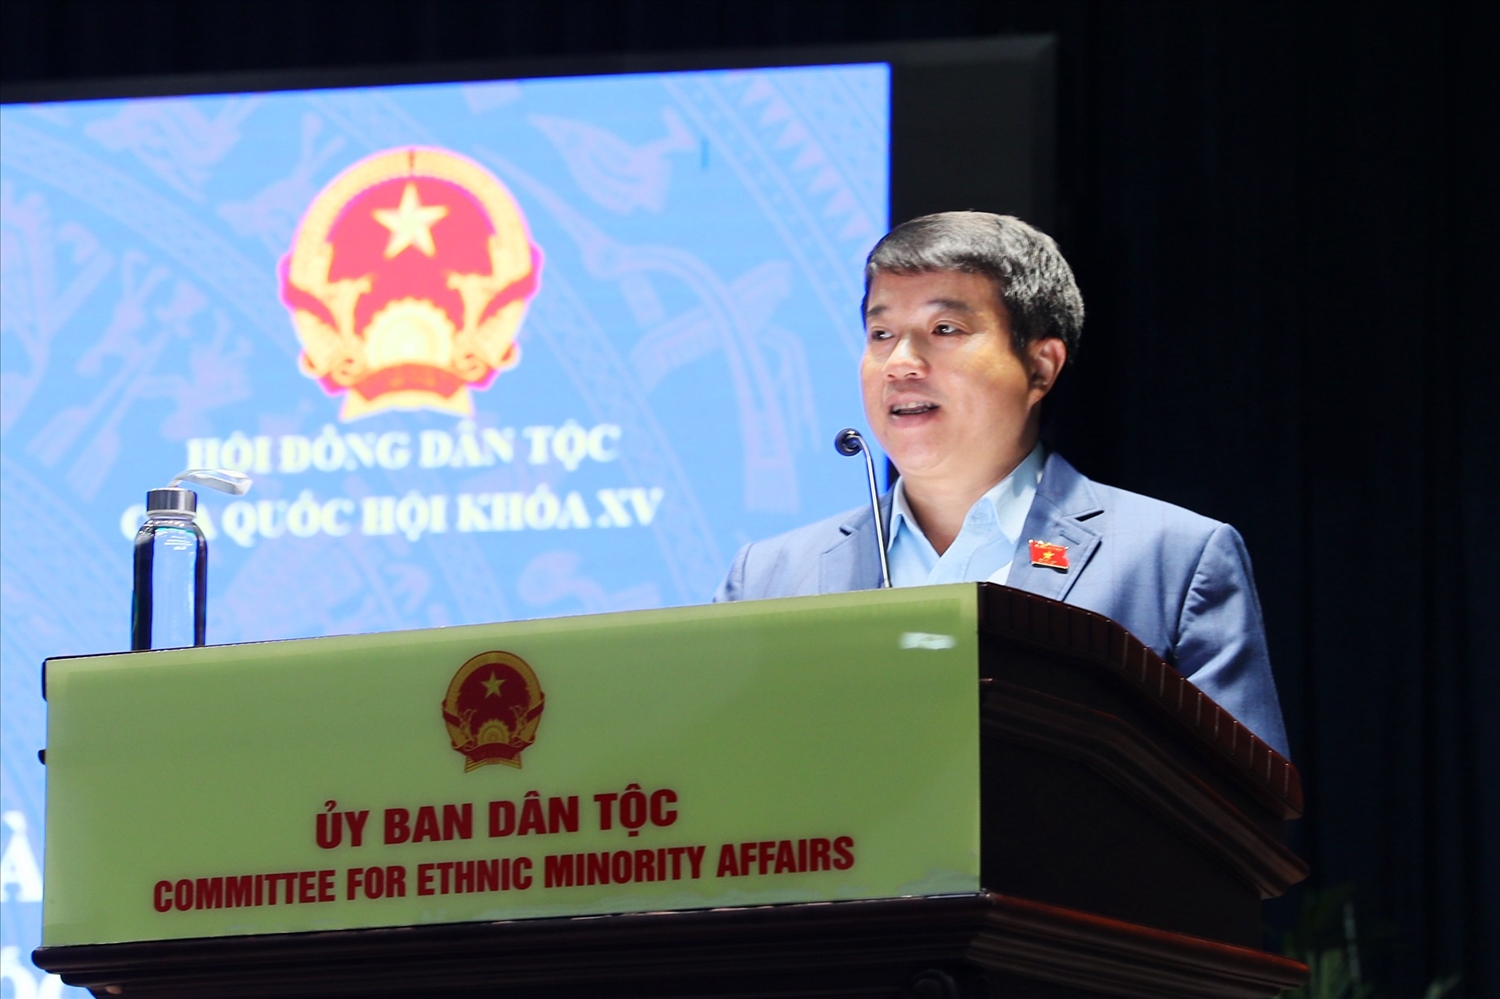 Chủ tịch HĐDT của Quốc hội Y Thanh Hà Niê Kđăm phát biểu tại buổi gặp mặt.